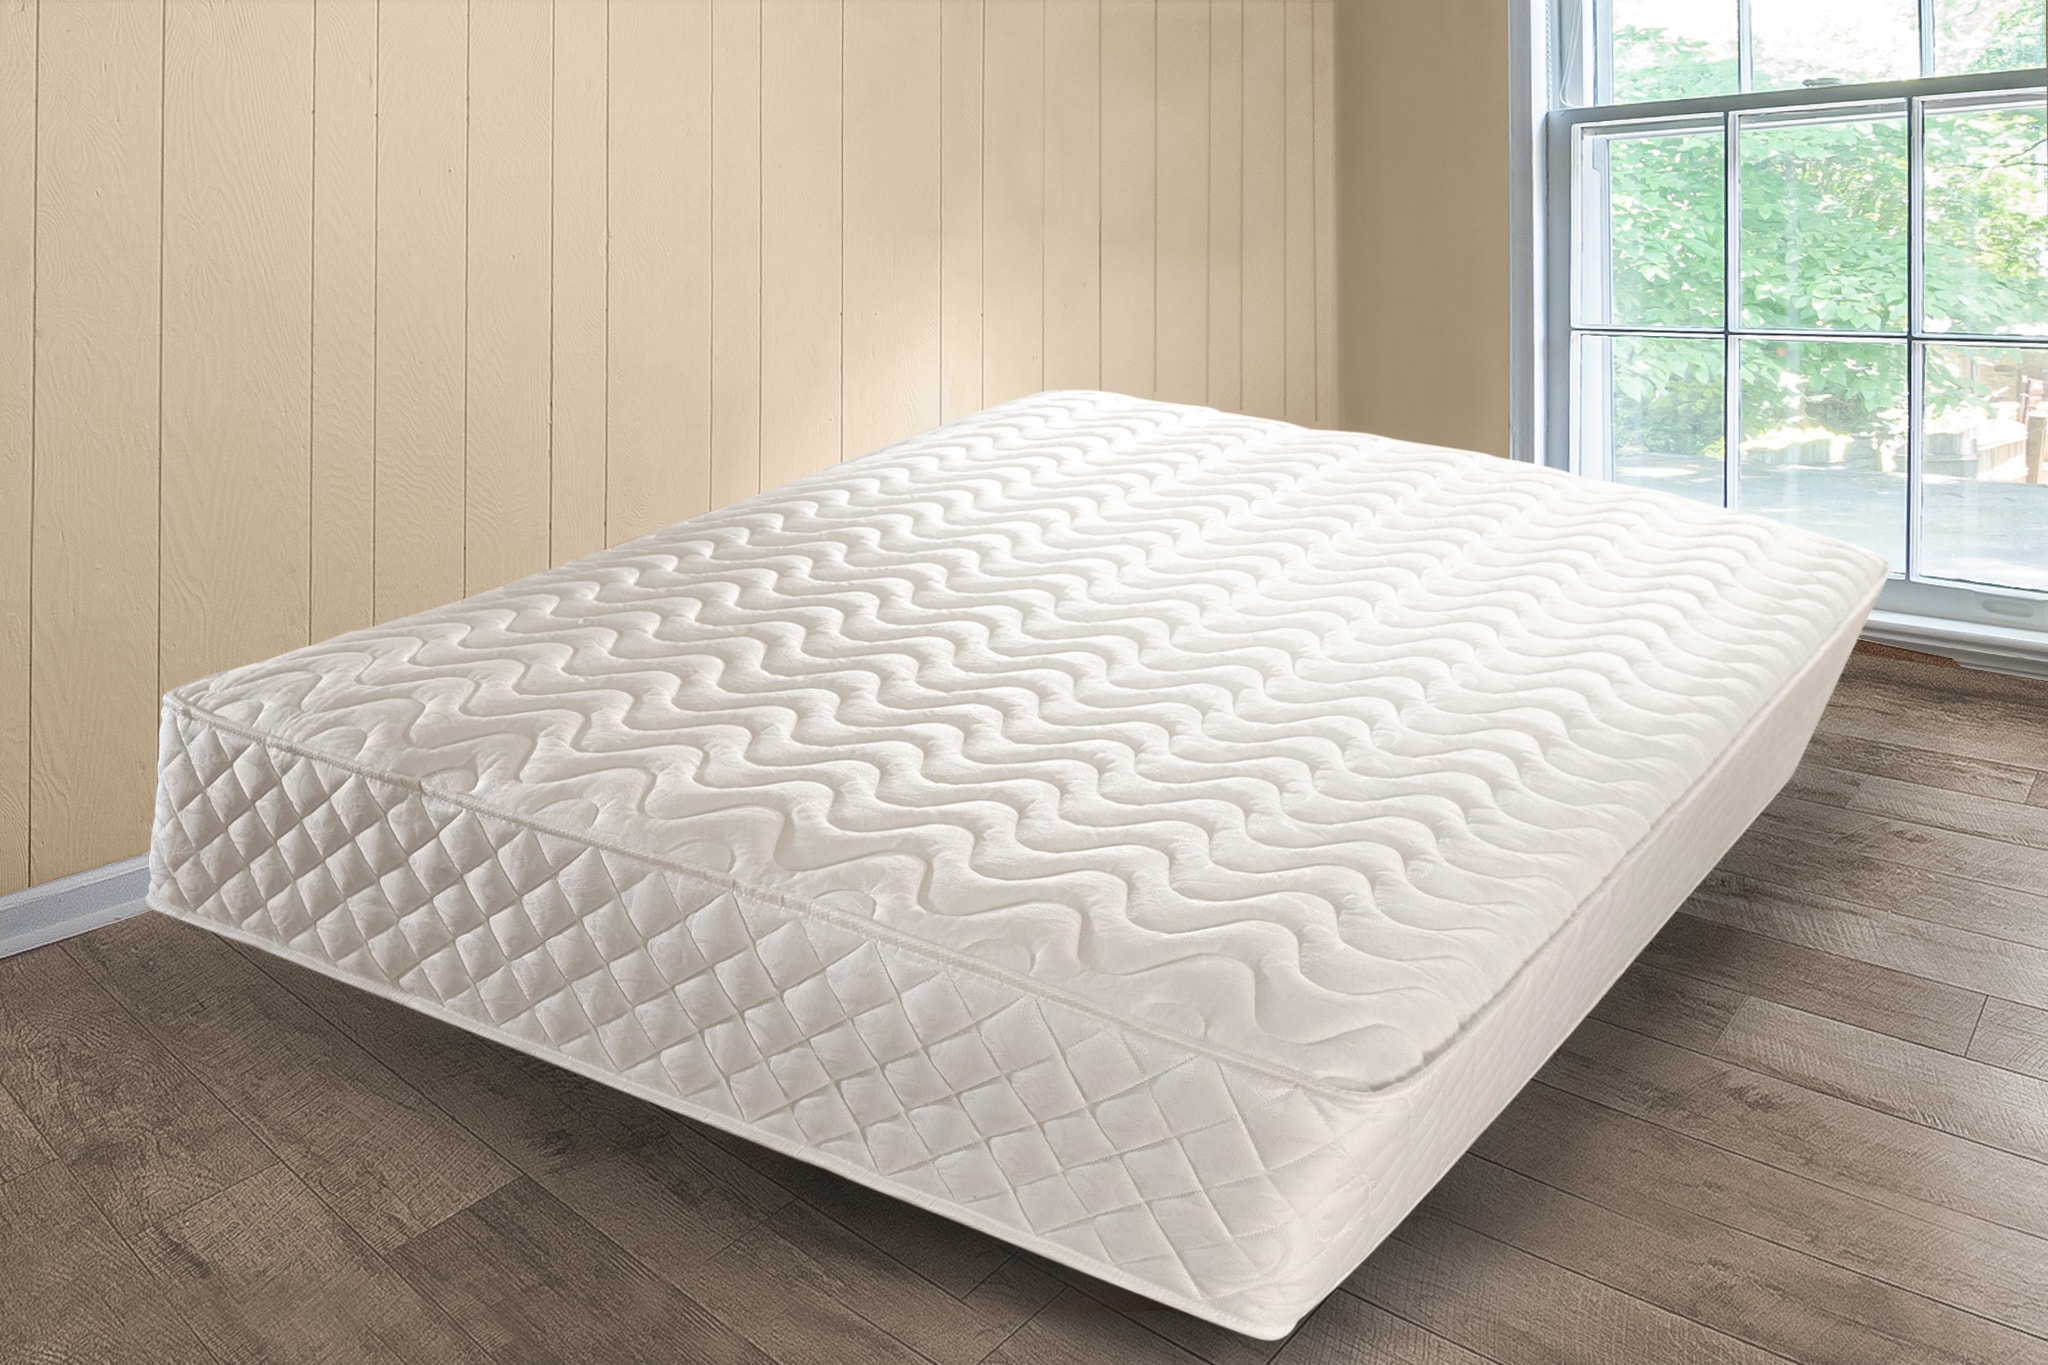 custom round memory foam mattress